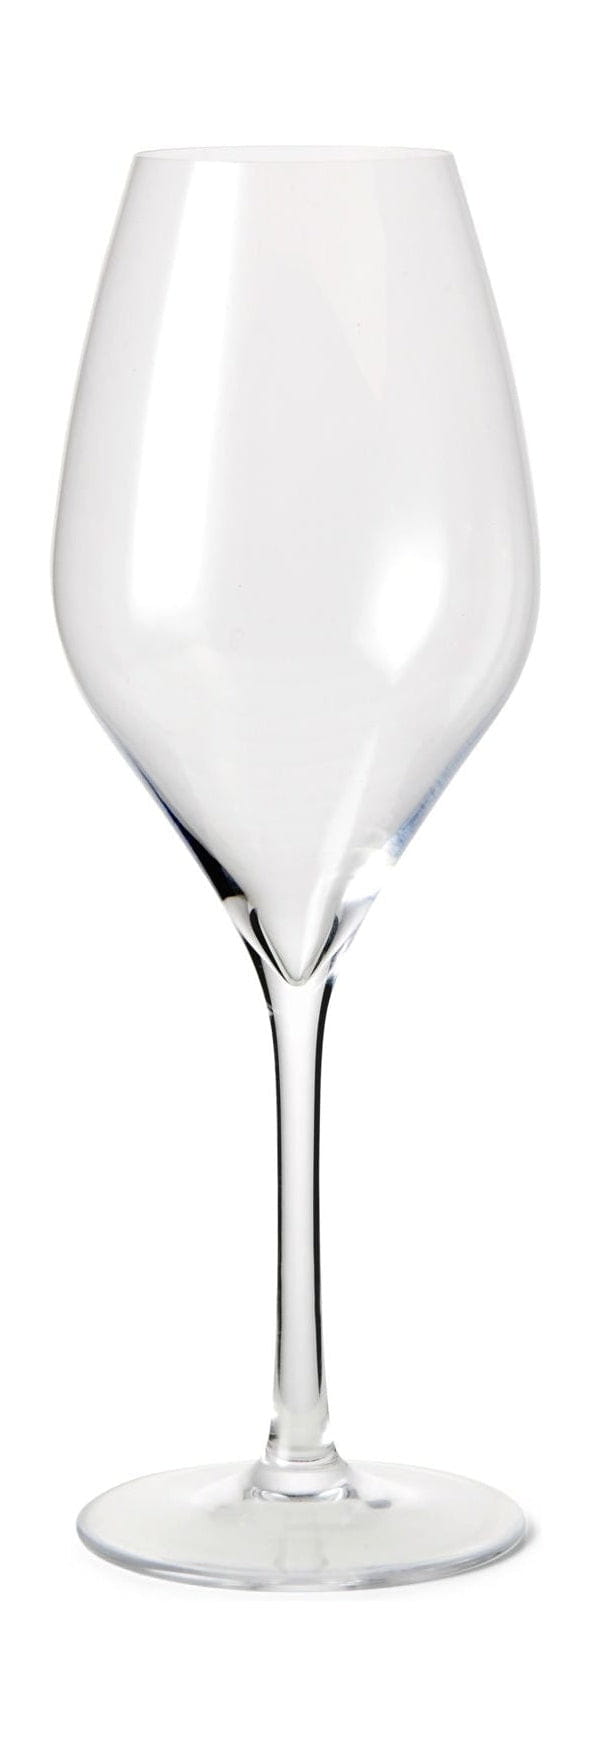 Rosendahl Premium Champagne Glass Sæt på 2 370 ml, klart